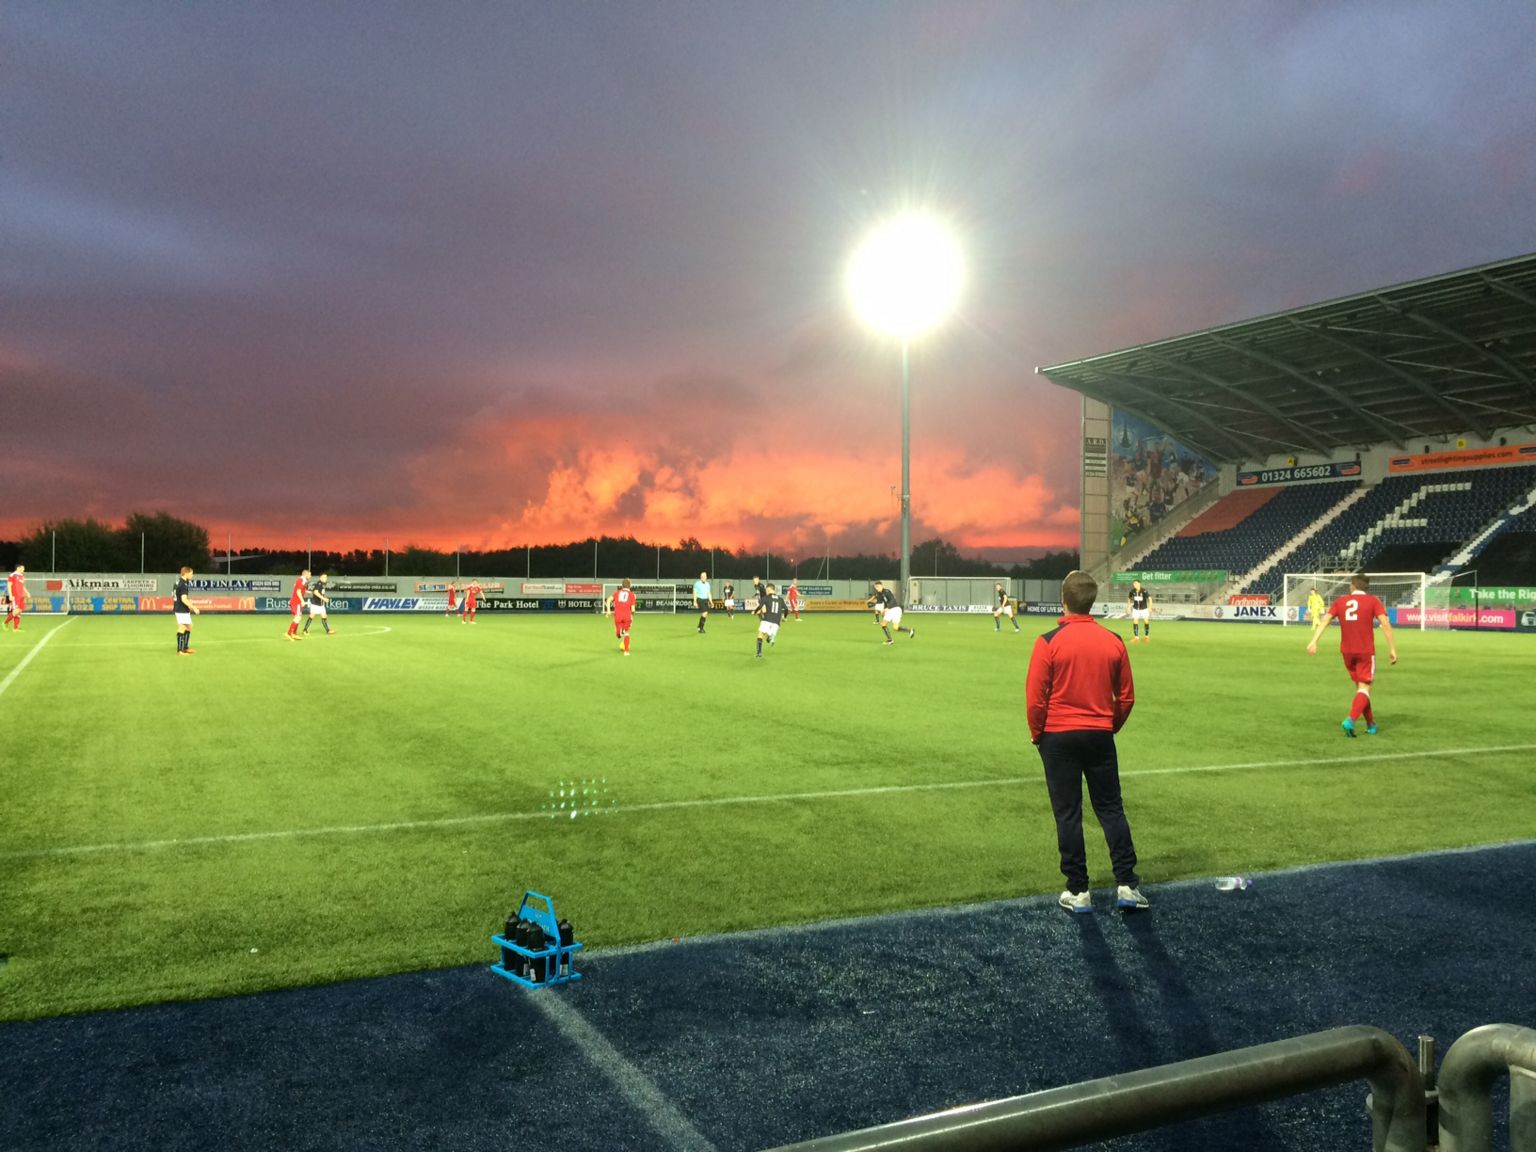 Sunset over Falkirk stadium